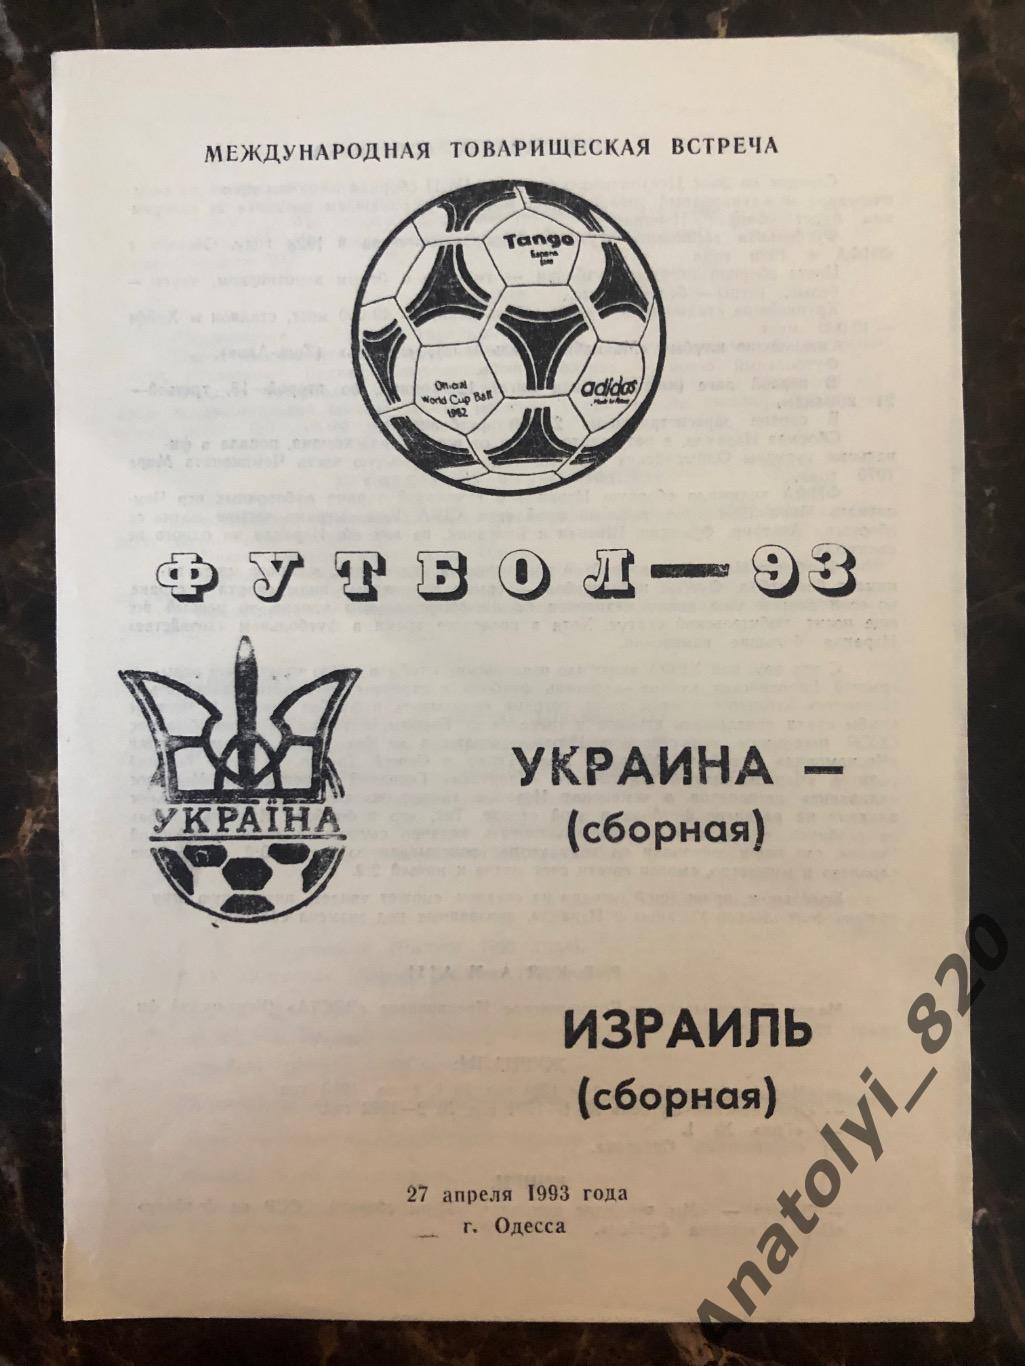 Сборная Украины - сборная Израиля, 27.04.1993